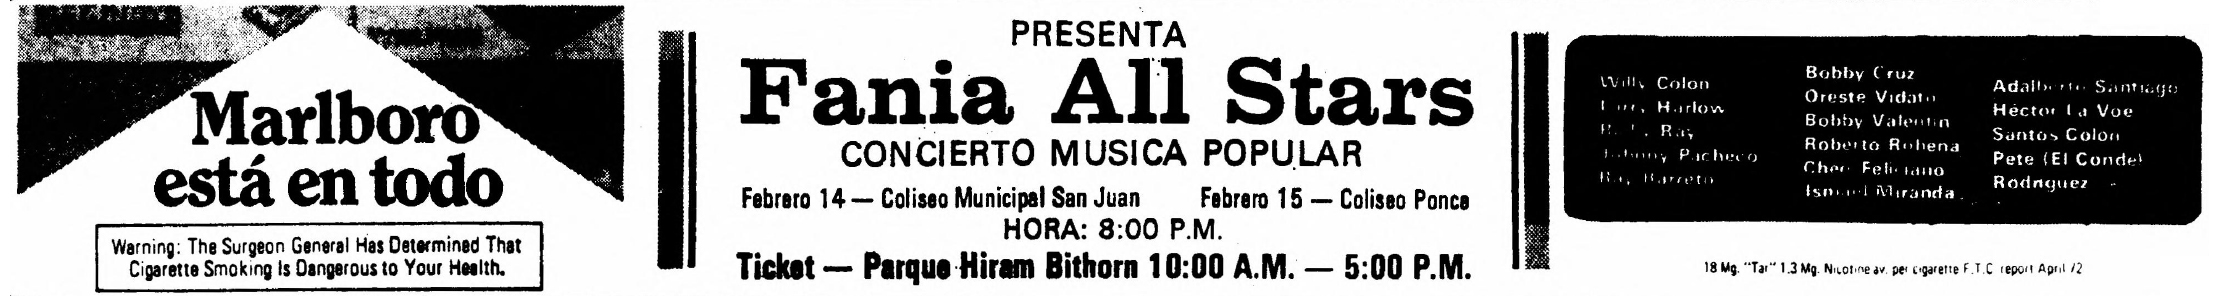 anuncio de cigarros Marlboro - auspiciador principal del evento de 14 de febrero de 1973 en el Coliseo Municipal de San Juan, renombrado Coliseo Roberto Clemente, quien falleció diciembre 1972. y además el 15 de febrero de 1973 en el Coliseo Ponce